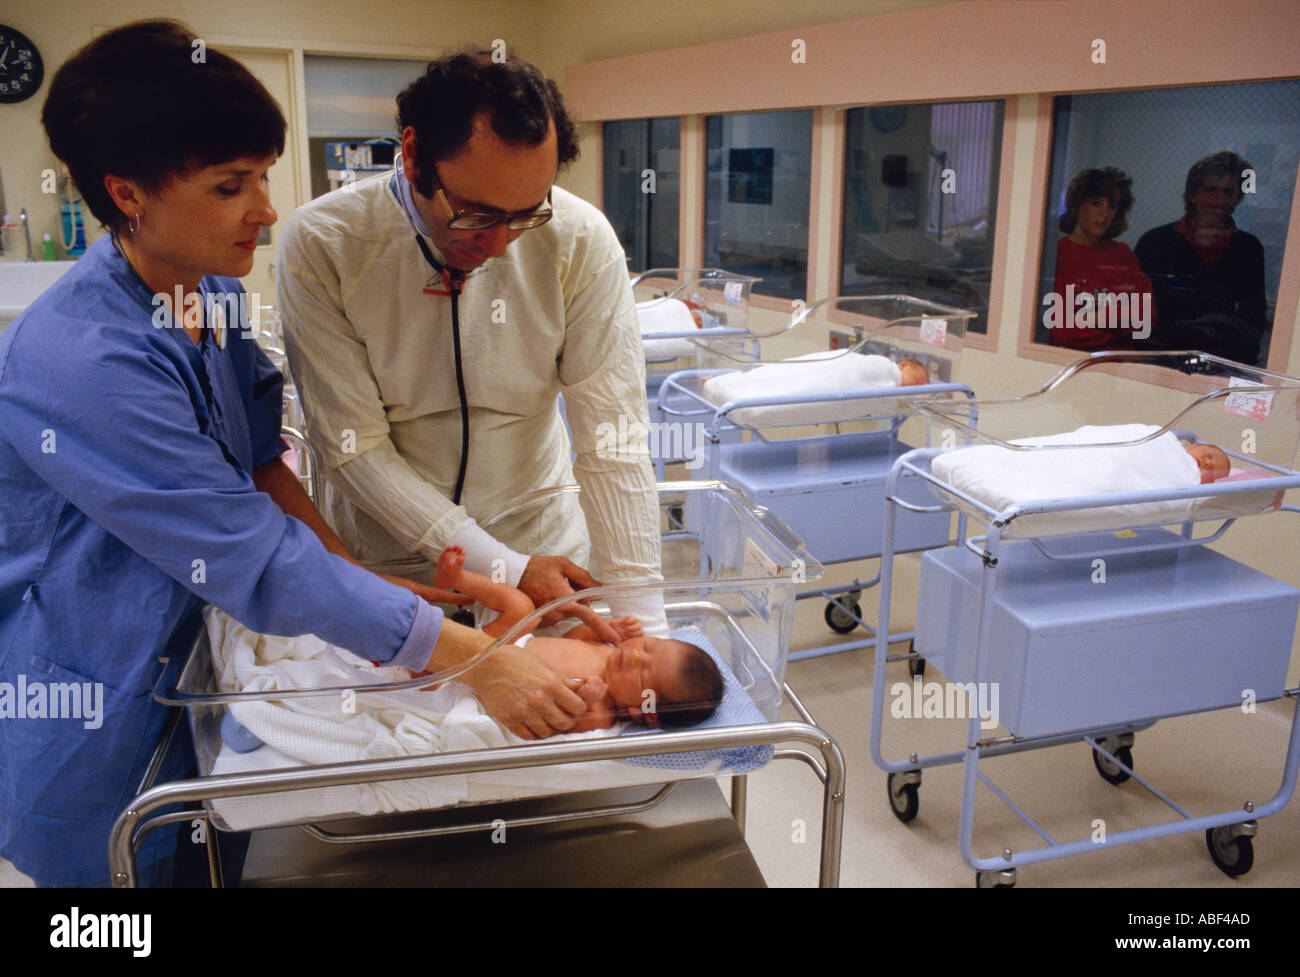 Médical - un pédiatre et une infirmière examine un nouveau-né dans une crèche de l'hôpital / USA. Banque D'Images